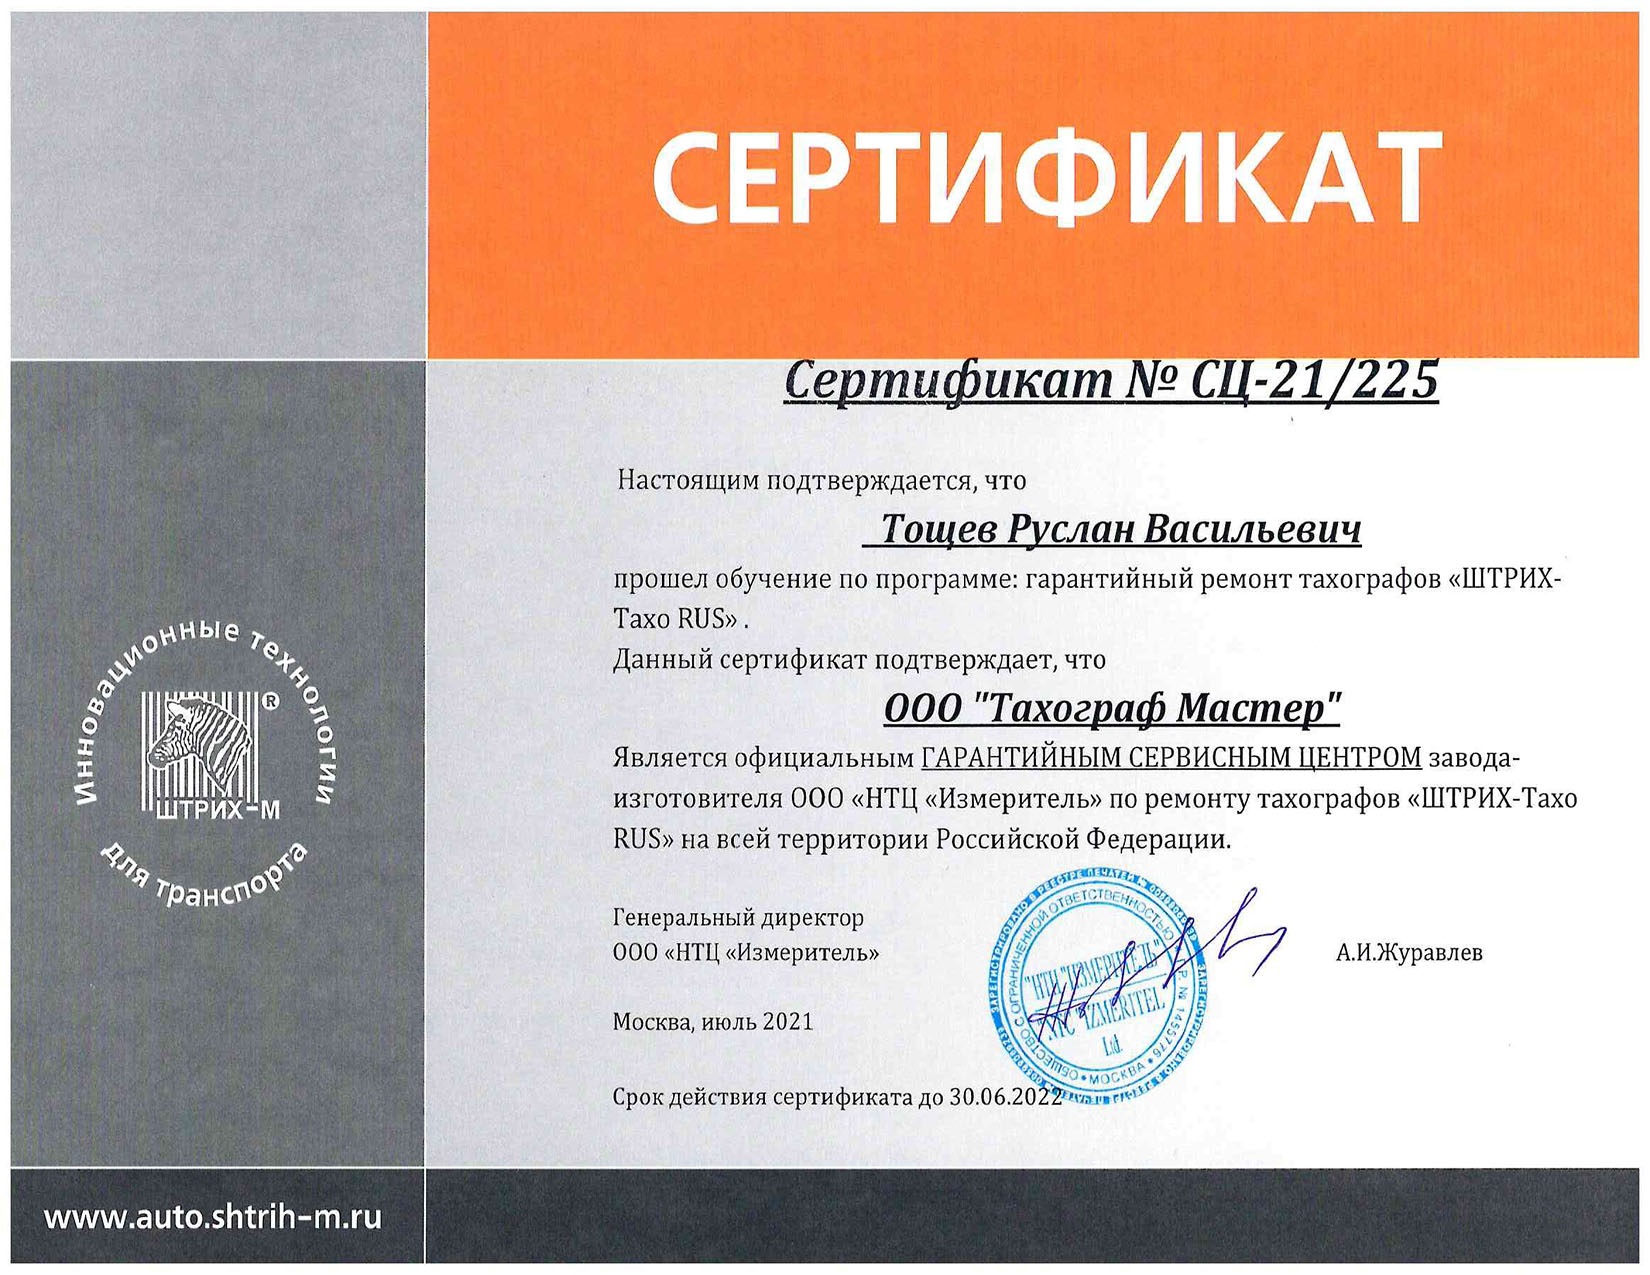 Сертификат на установку тахографа